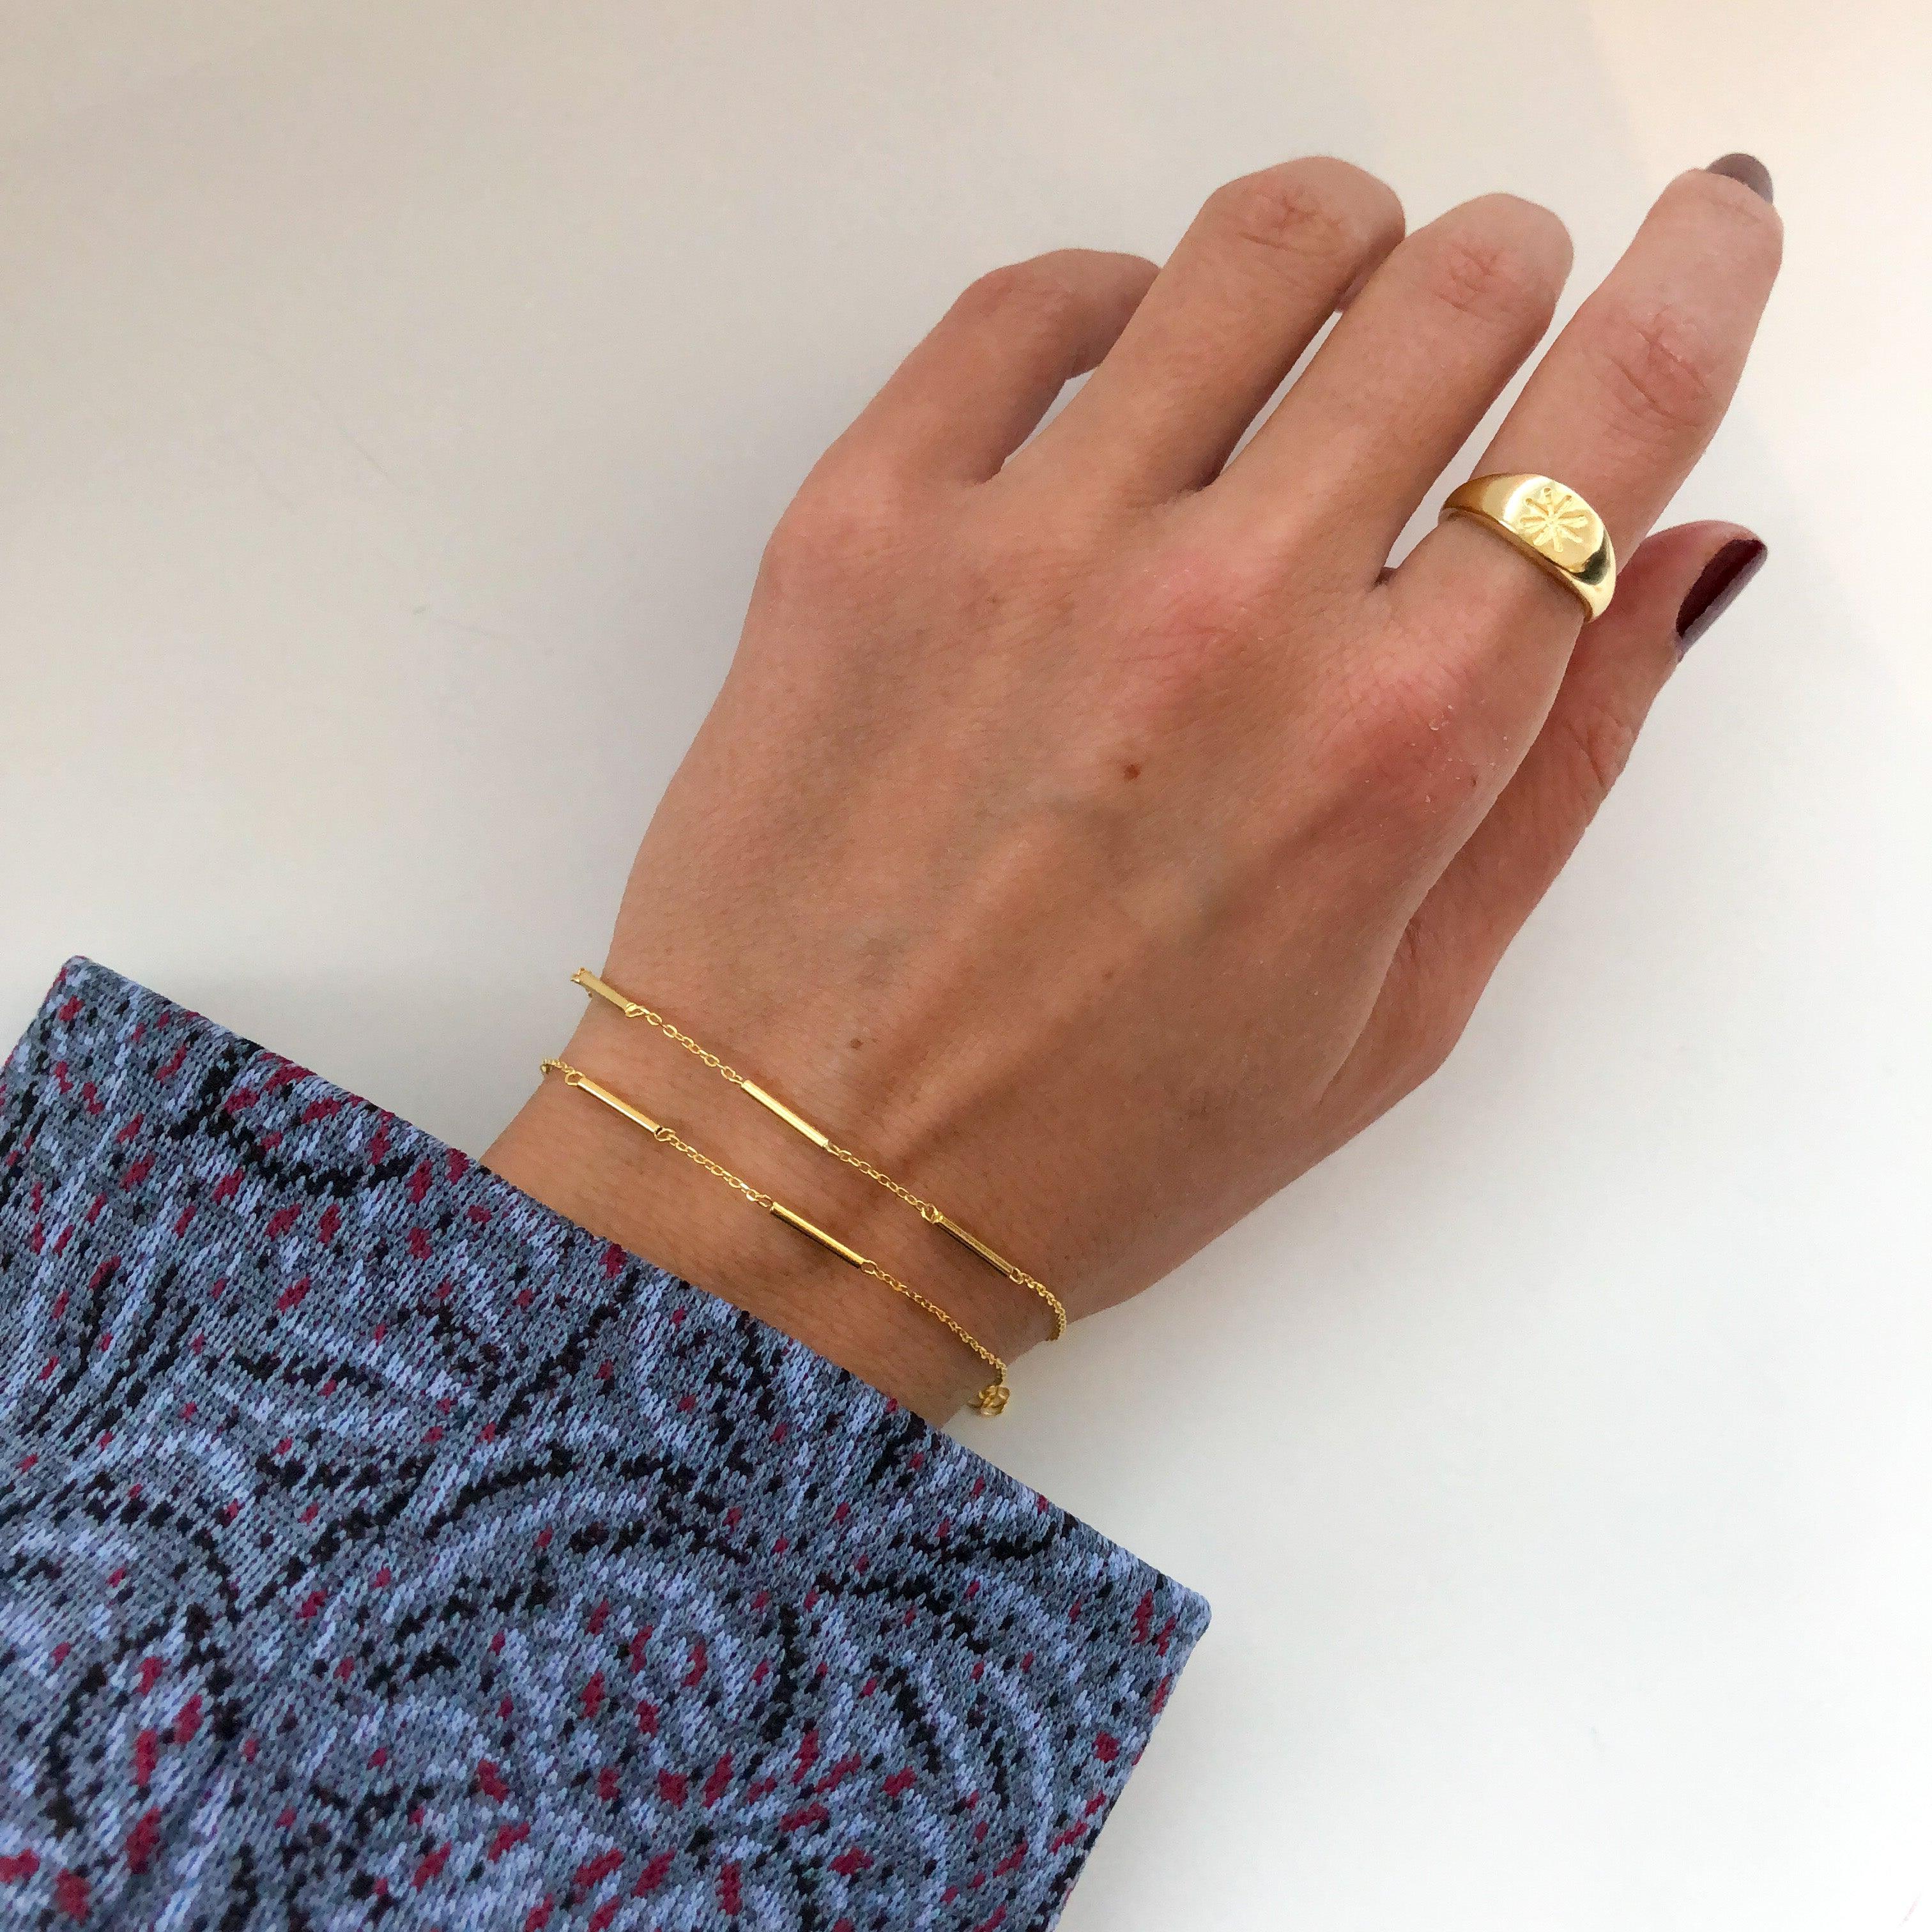 Orazio Stainless Steel Box Chain Bracelet Female 14K Gold Plated Charm Dainty  Bracelets for Women Minimalist Jewelry Gifts - AliExpress